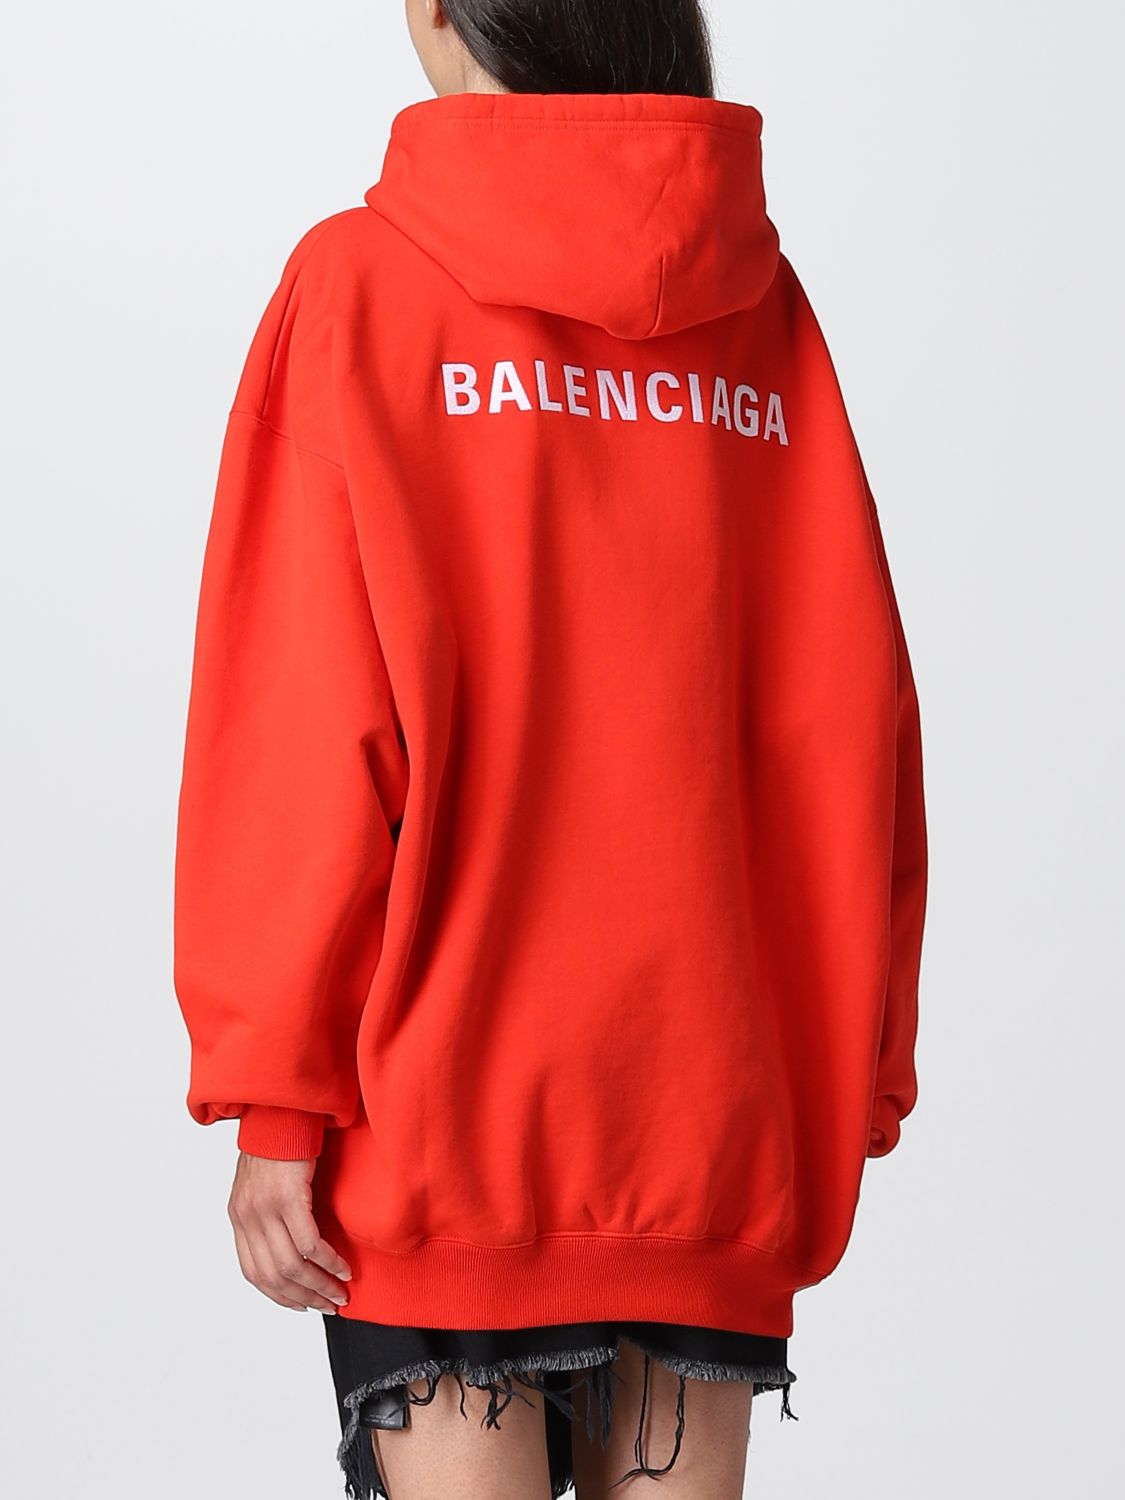 Balenciaga Sweatshirts  Knitwear for Men  Shop Now on FARFETCH